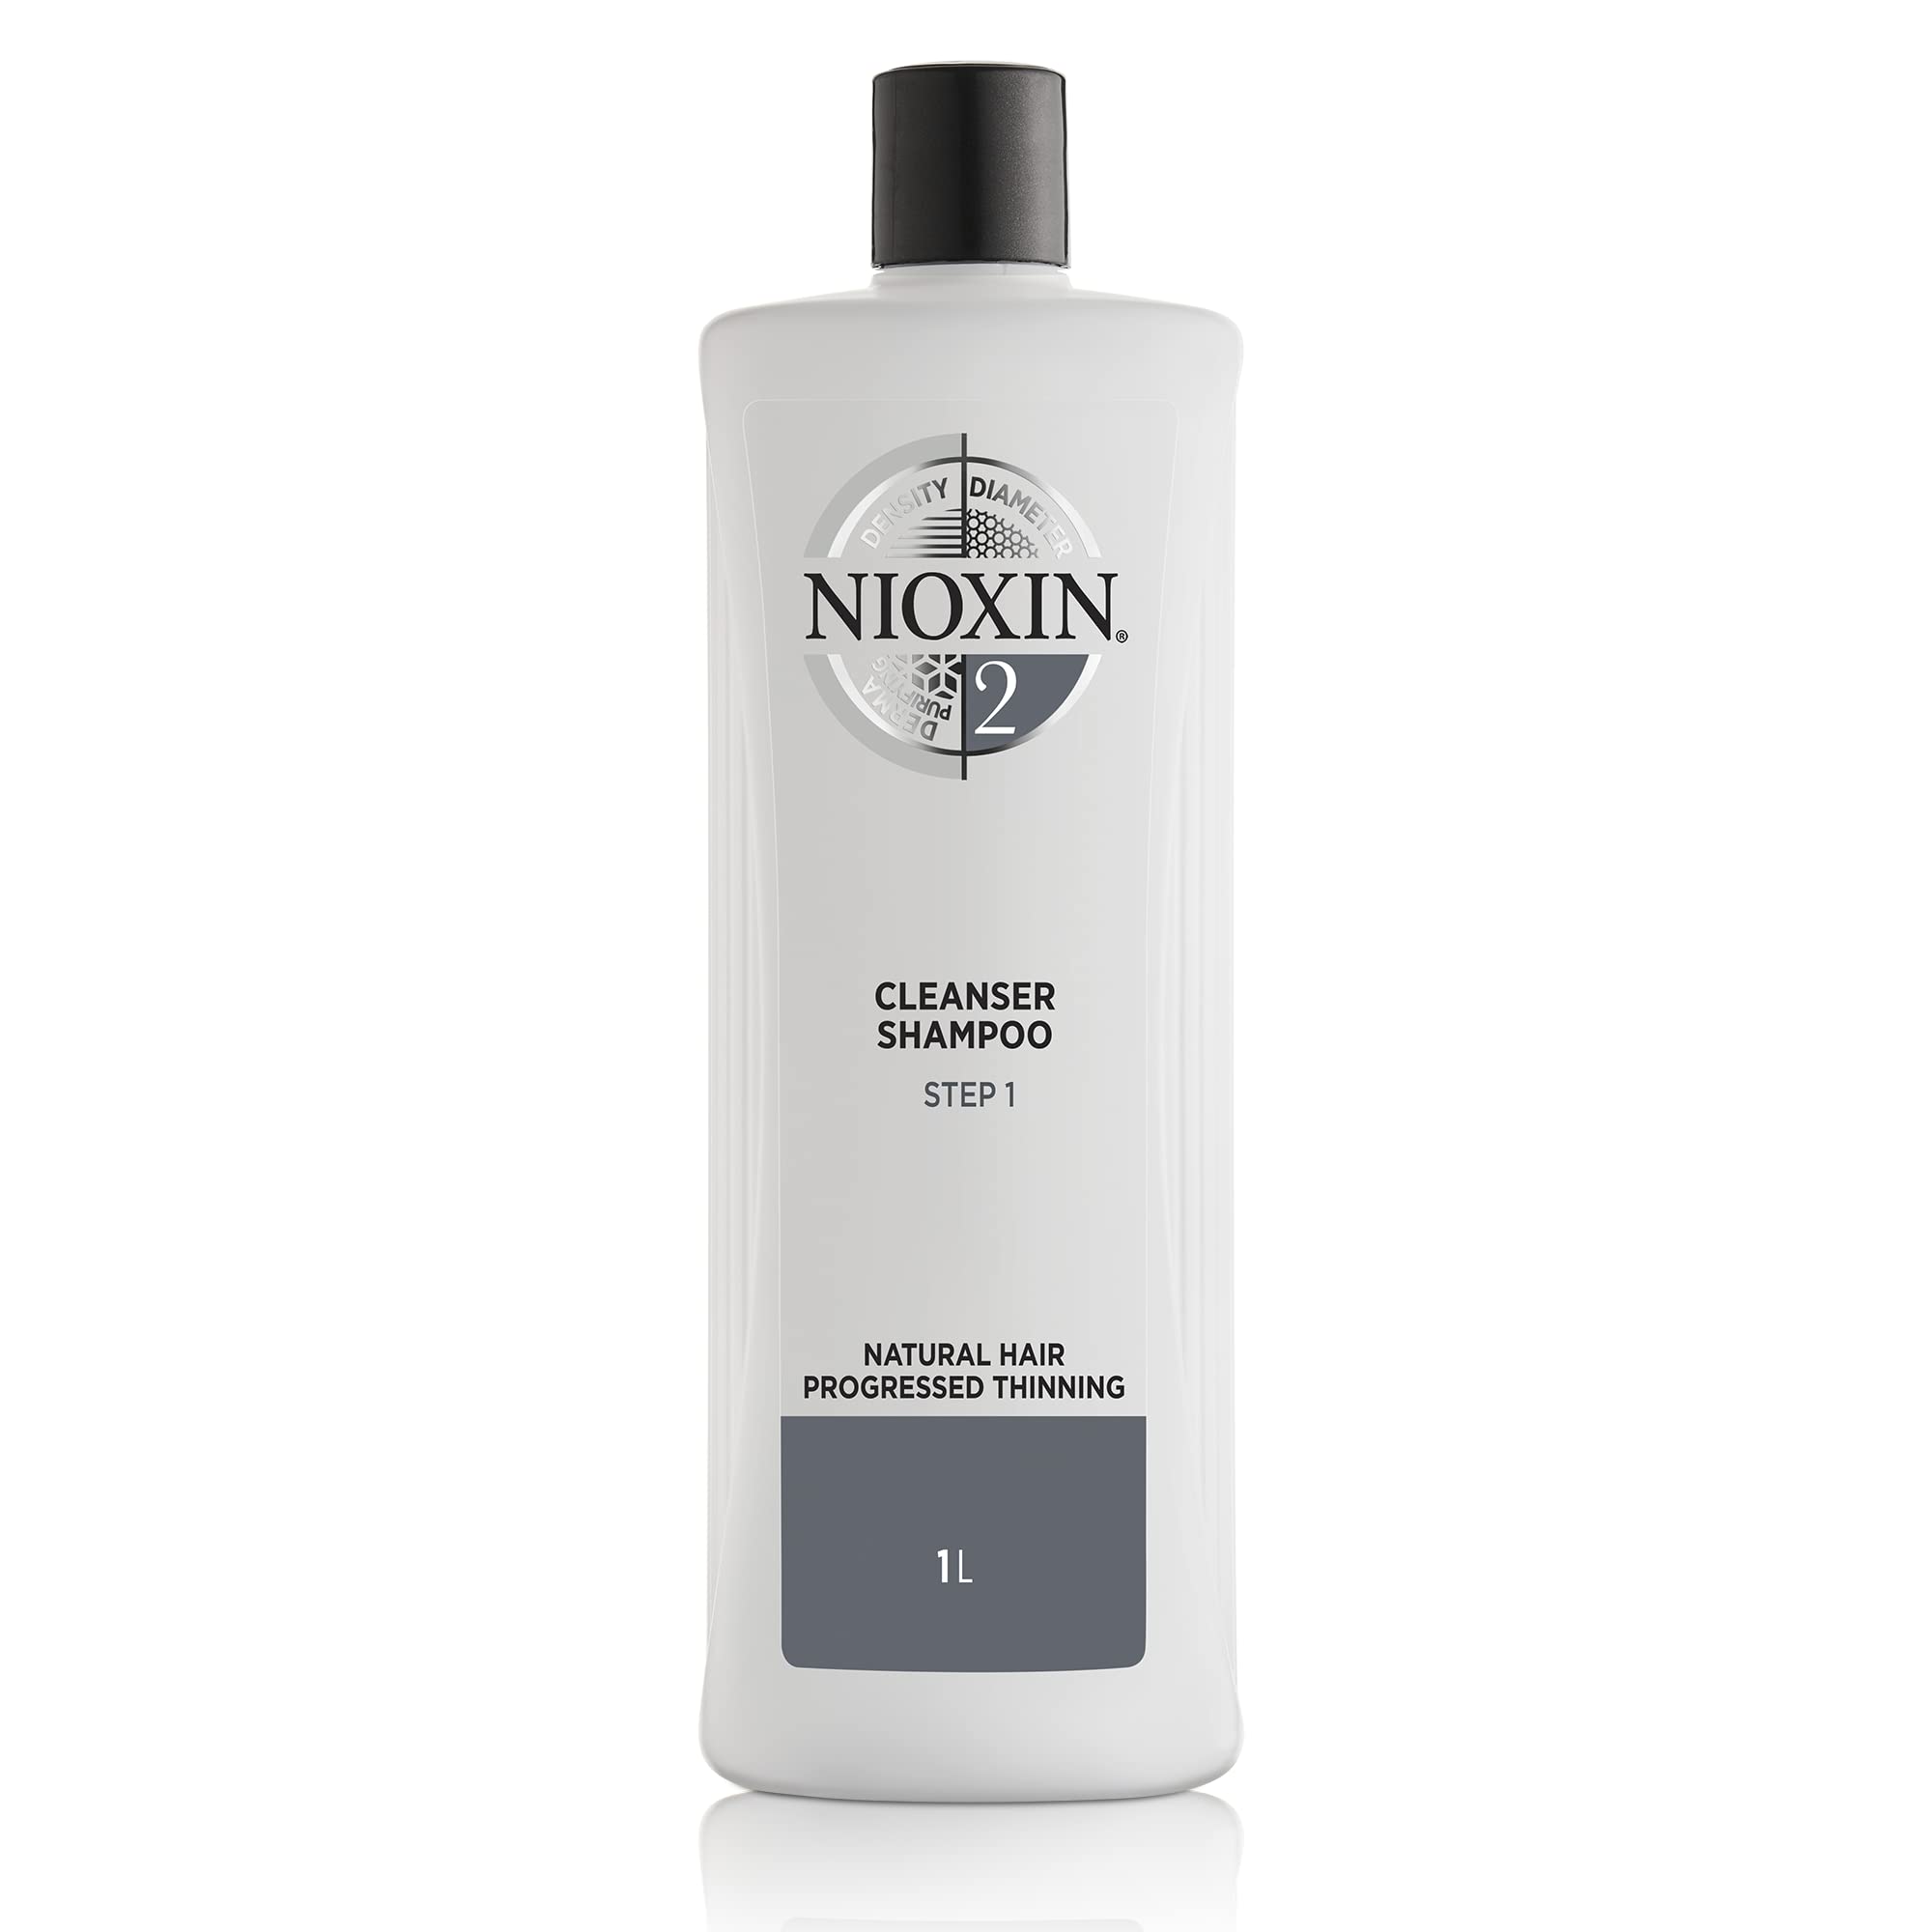 NIOXIN System 2 Cleanser Shampoo (1 L) – Shampoo gegen Haarausfall für naturbelassenes, sichtbar dünner werdendes Haar – Tiefenreinigungsshampoo zur Haarverdichtung